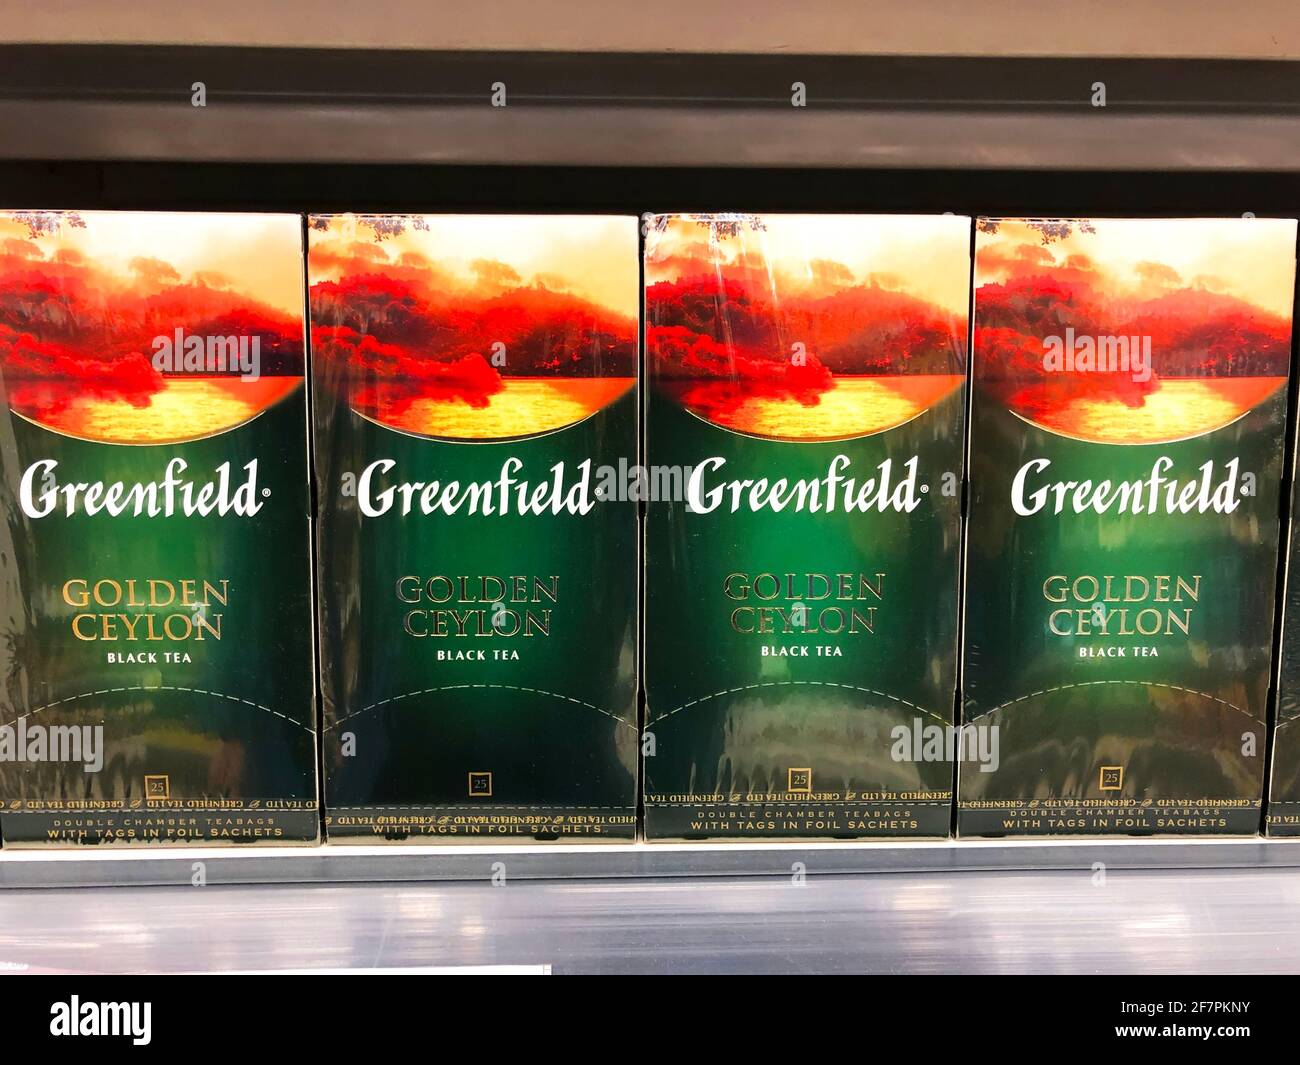 Greenfield Golden ceylon thé noir dans des sacs de boîte, dans une étagère de supermarché gros plan, Russie, Saint-Pétersbourg. 08 avril 2021 Banque D'Images